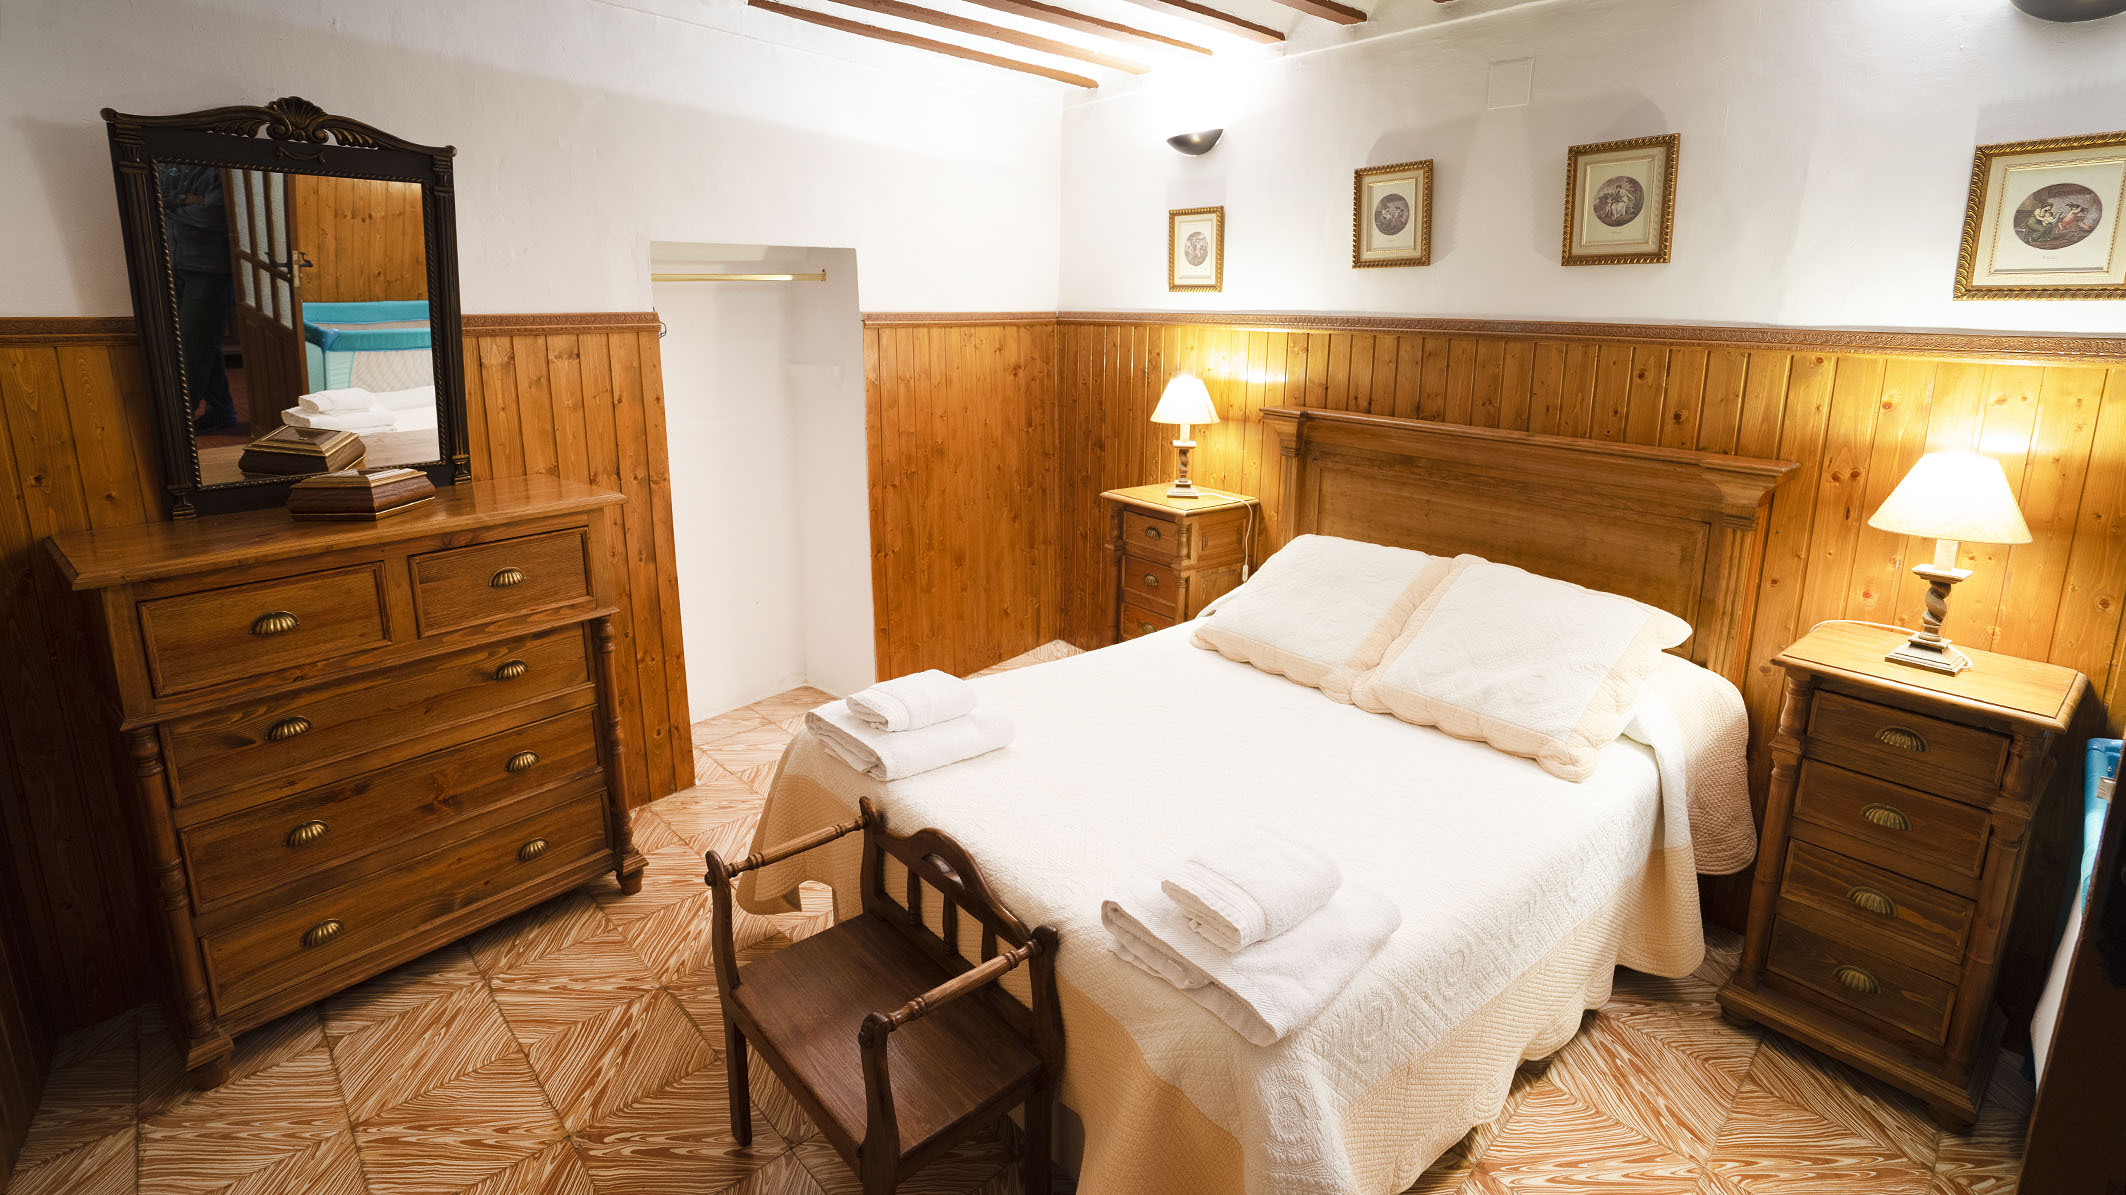 Dormitorio_01_Casa Rural Quijote y Sancho_Rufino Pardo